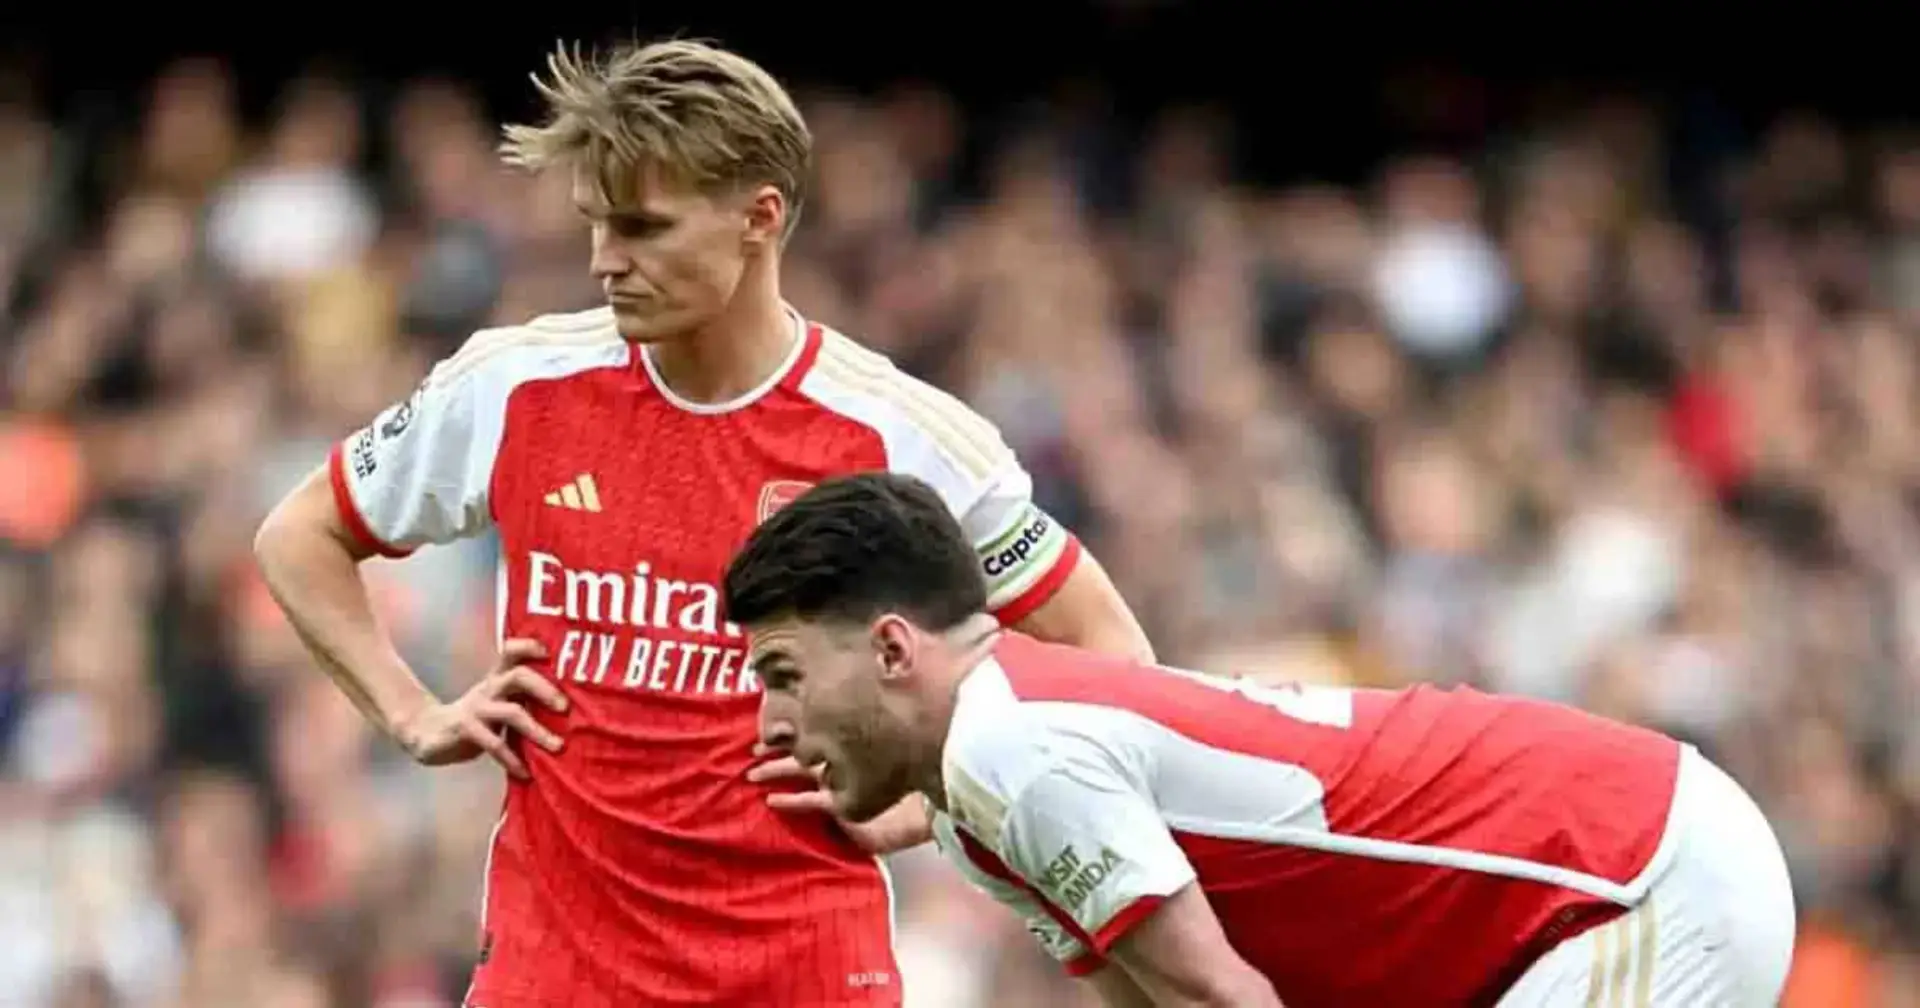 Gegnerübersicht: Arsenal kassiert Niederlage gegen Aston Villa, Ödegaard muss verletzt raus